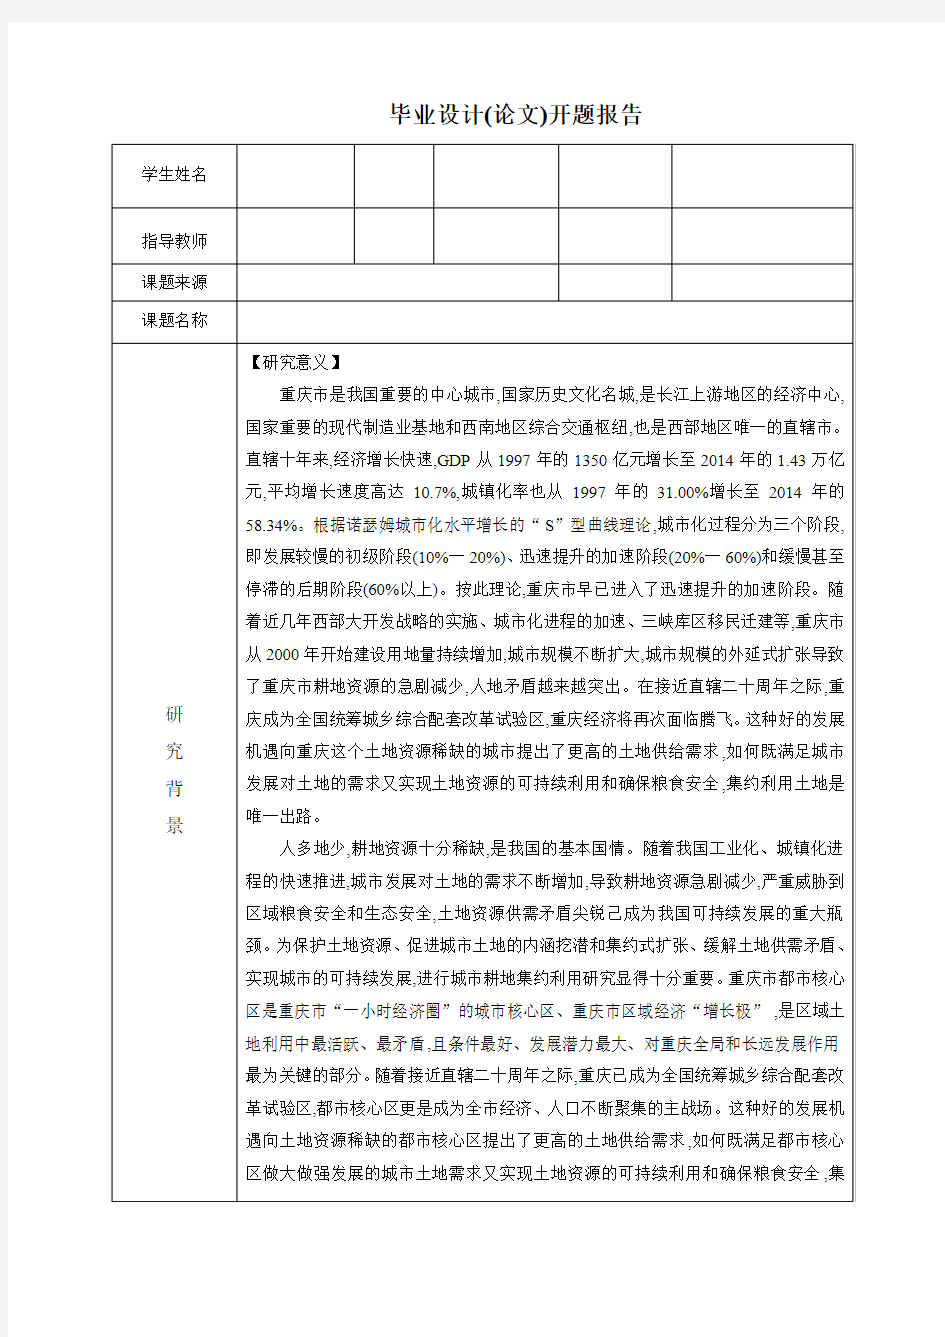 北京大学土地利用毕业设计开题报告